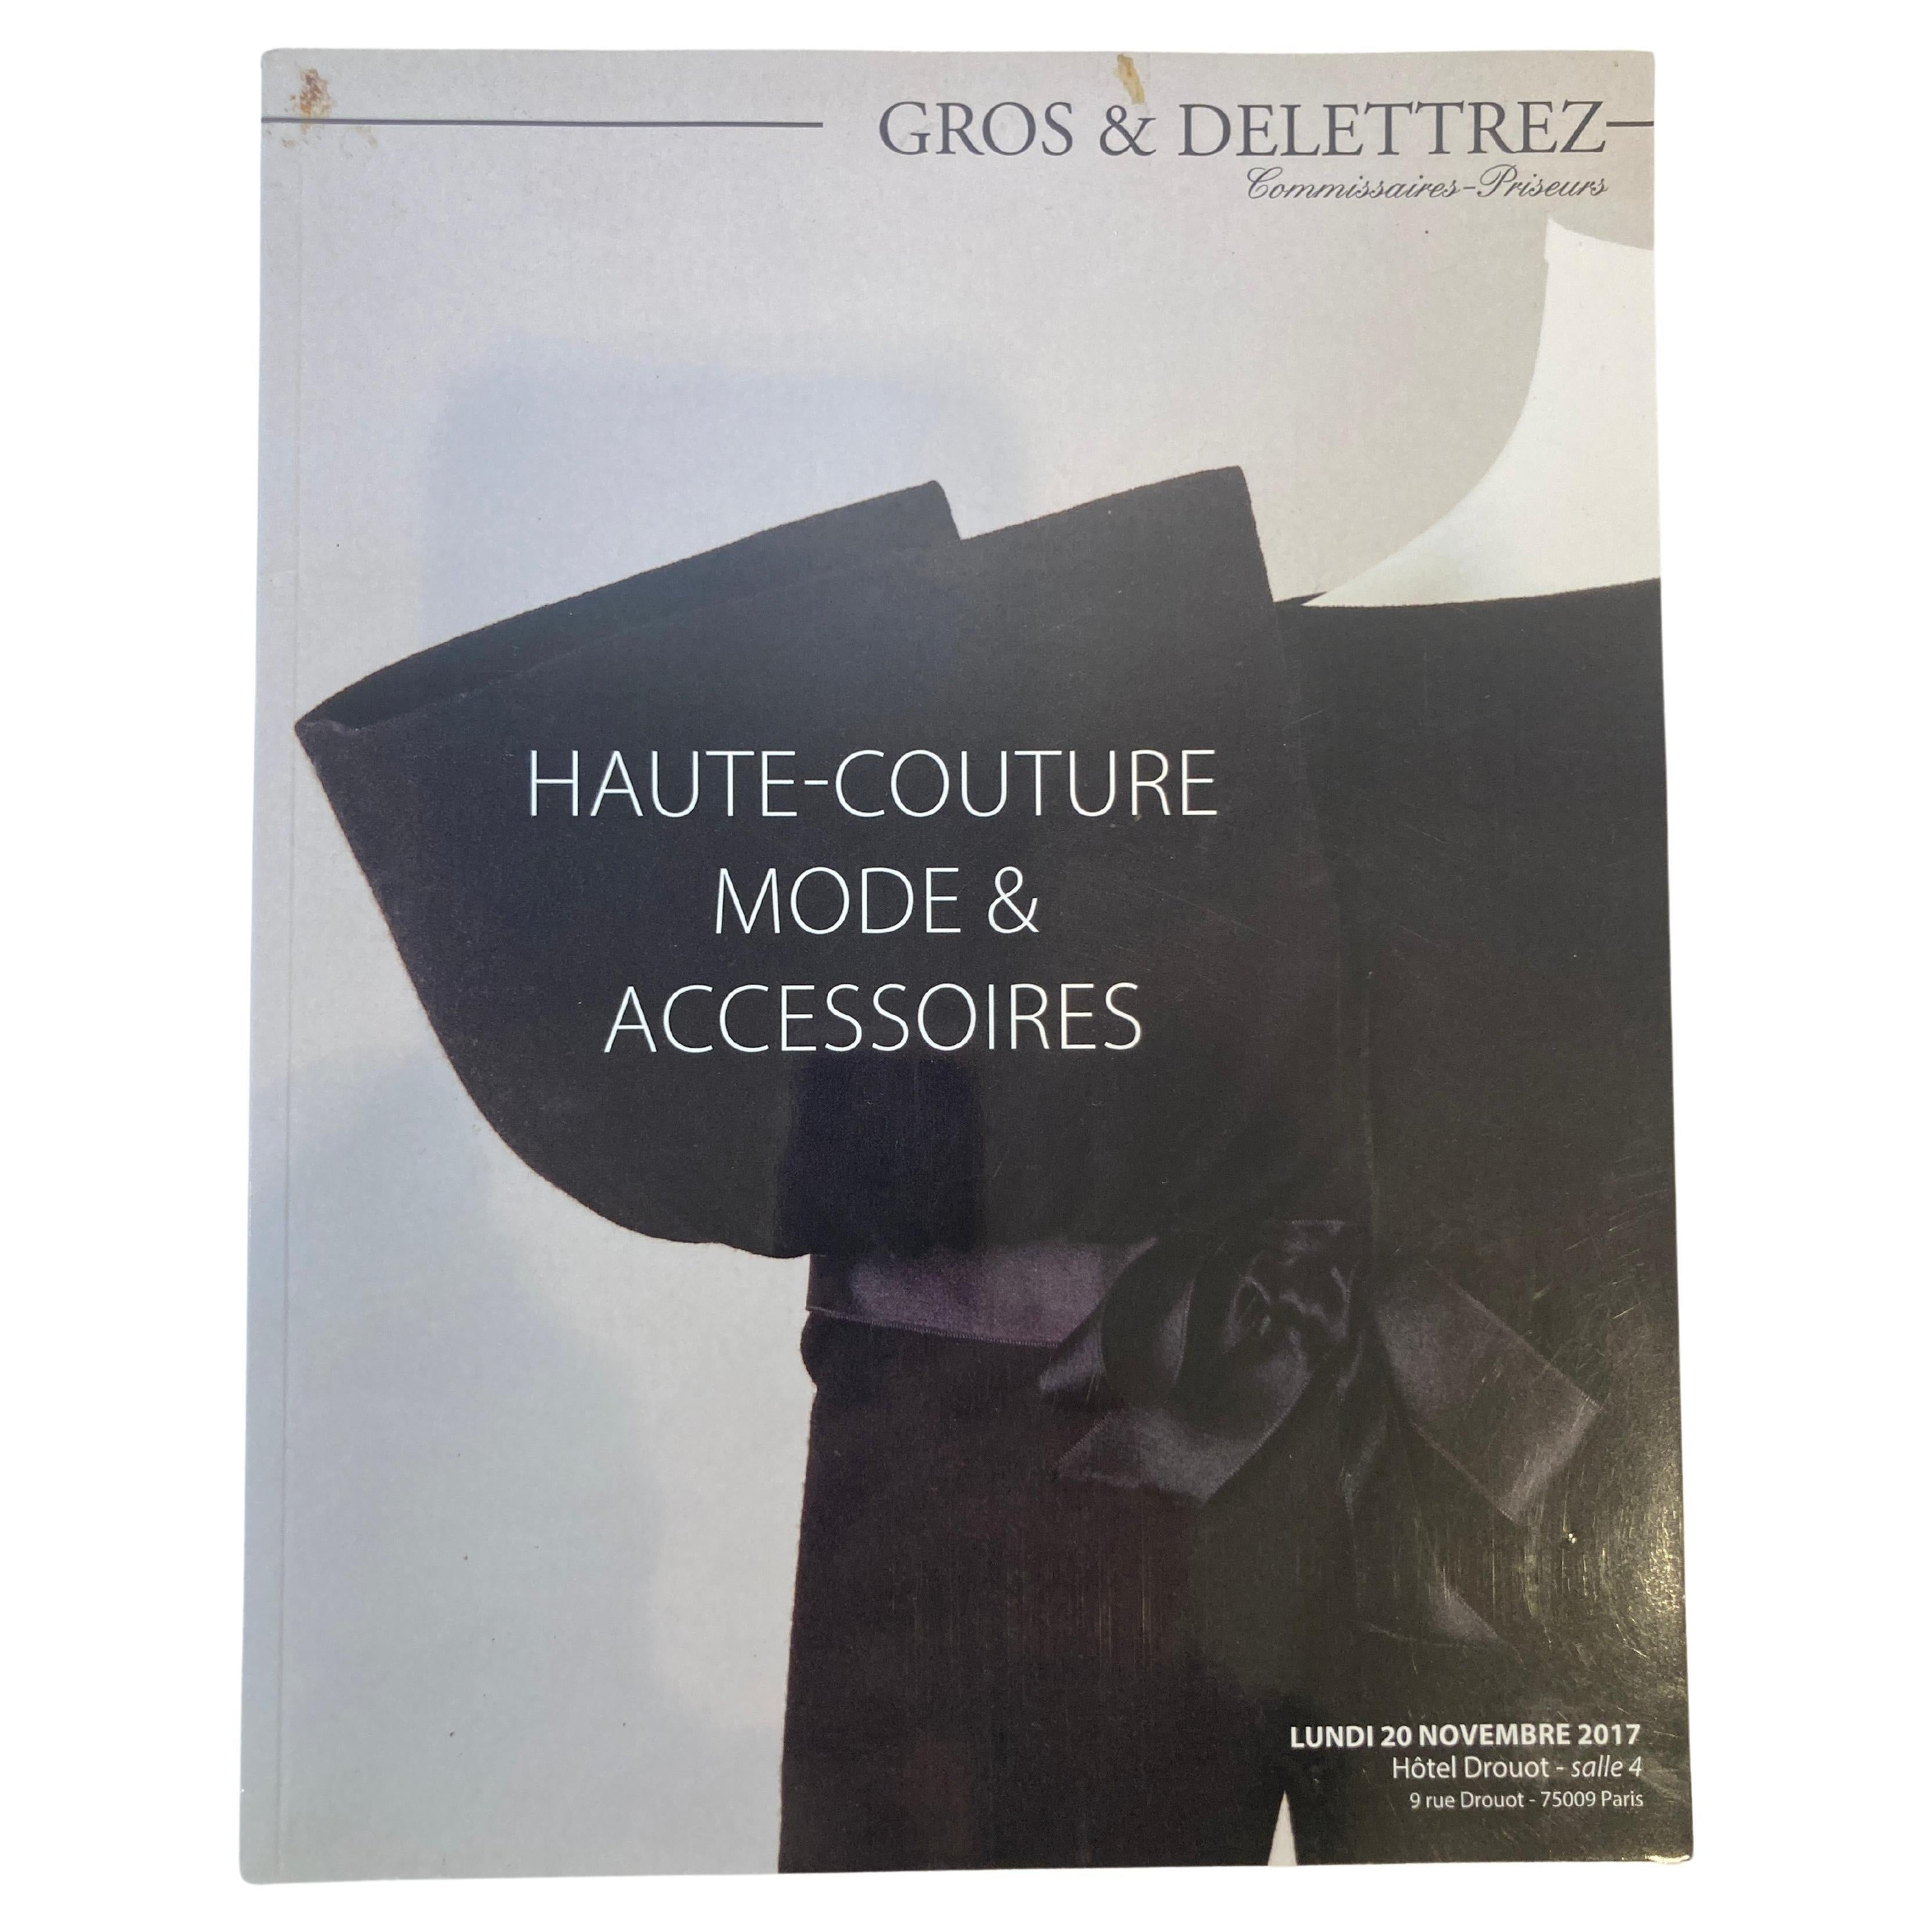 Paris Haute Couture Auction Catalog 2017 Published by Gros & Delettrez,
Haute Couture Mode et Accessoires Paris Auction Catalog 2017
Published by Gros & Delettrez, 2017.
Title: Haute Couture Mode et Accessoires Paris Auction Catalog 2017.
Binding: